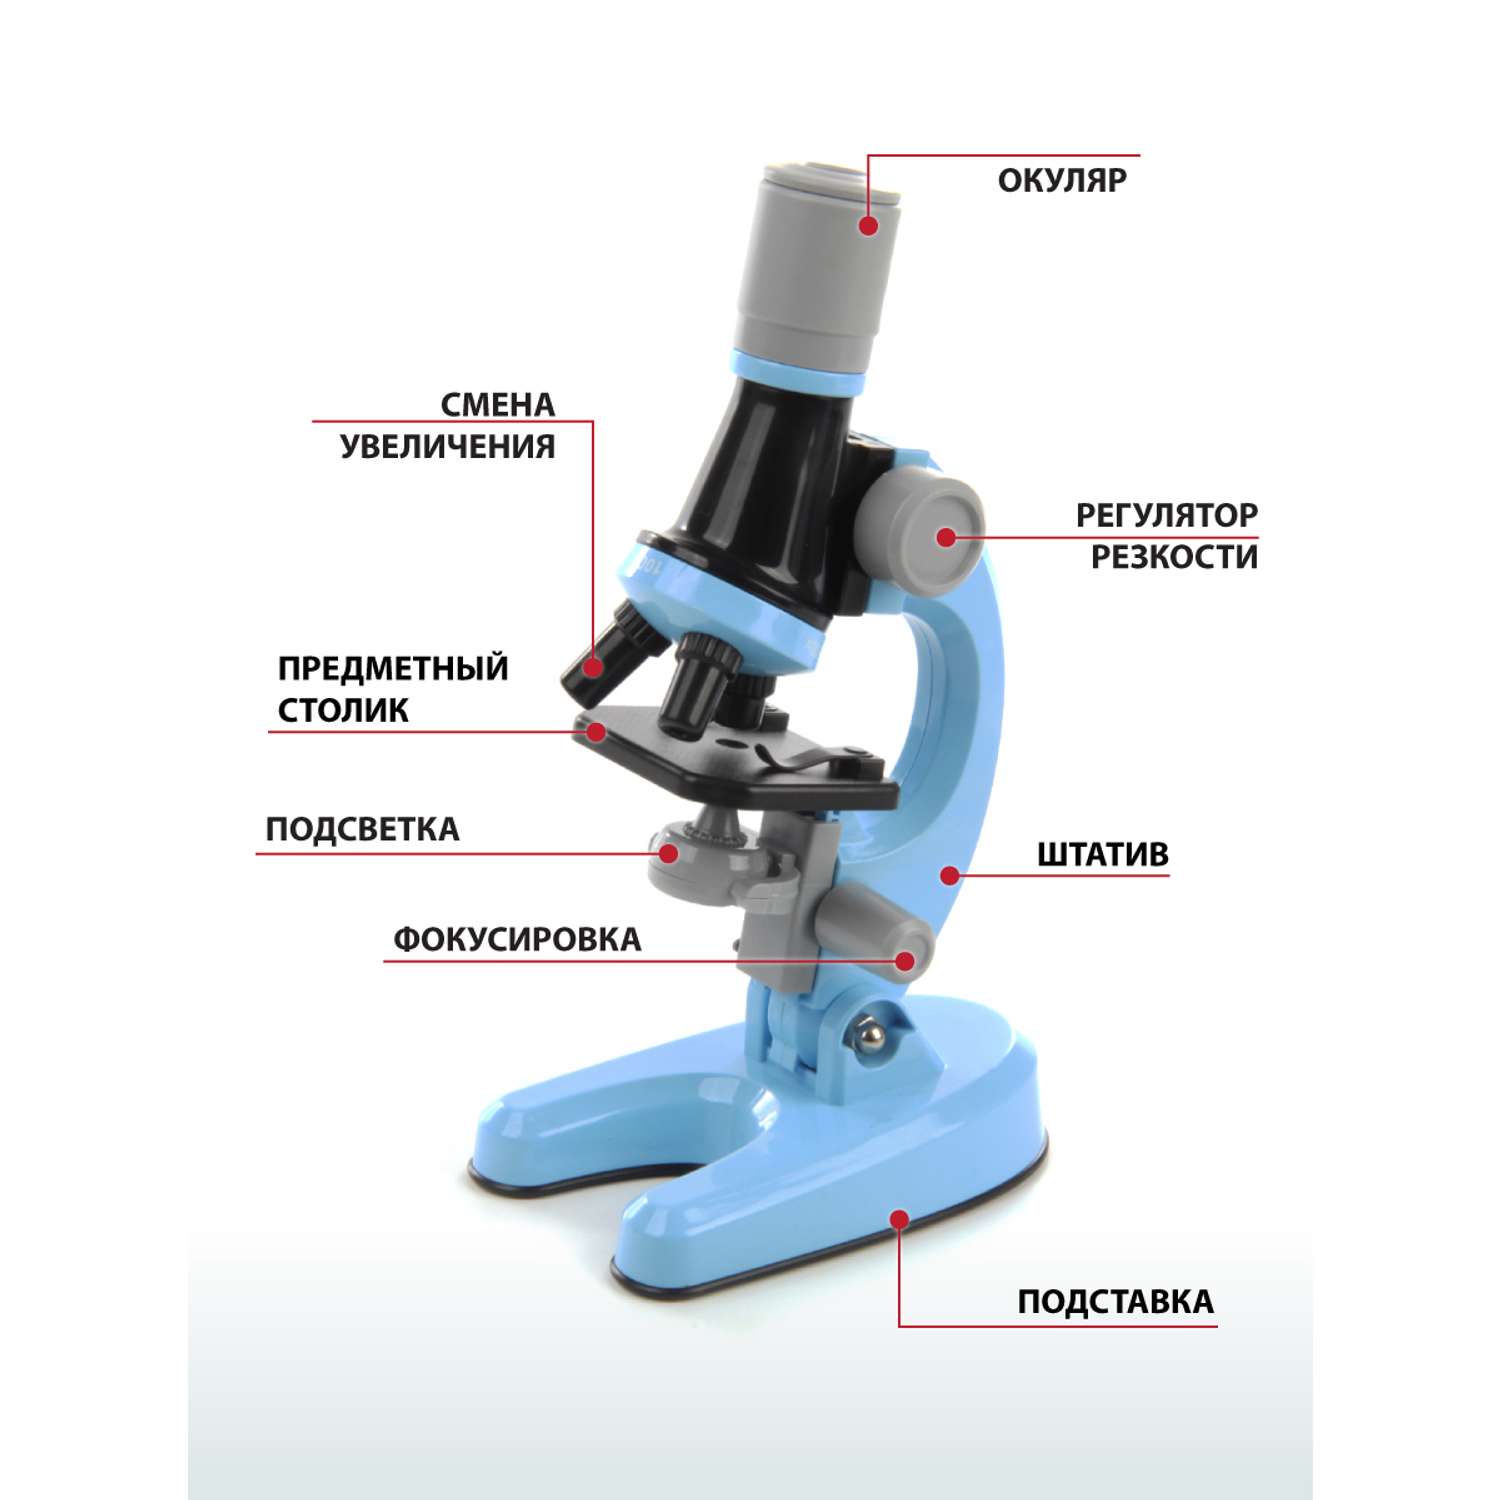 Микроскоп Veld Co с аксессуарами 8 предметов - фото 4